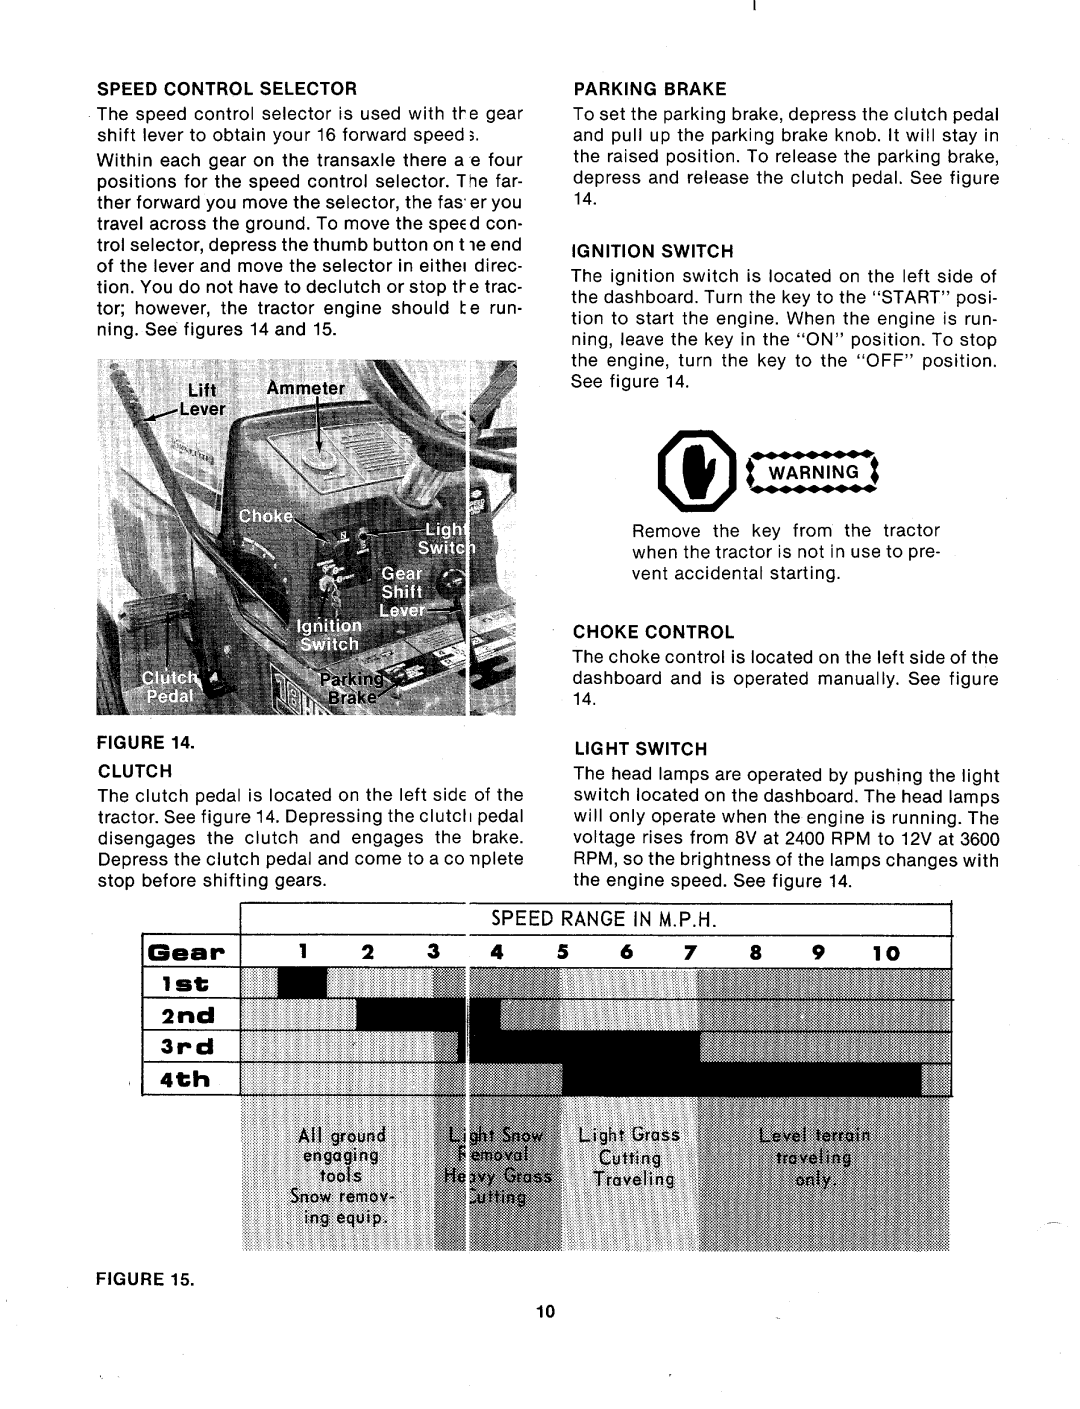 Bolens 144-918-000 manual 